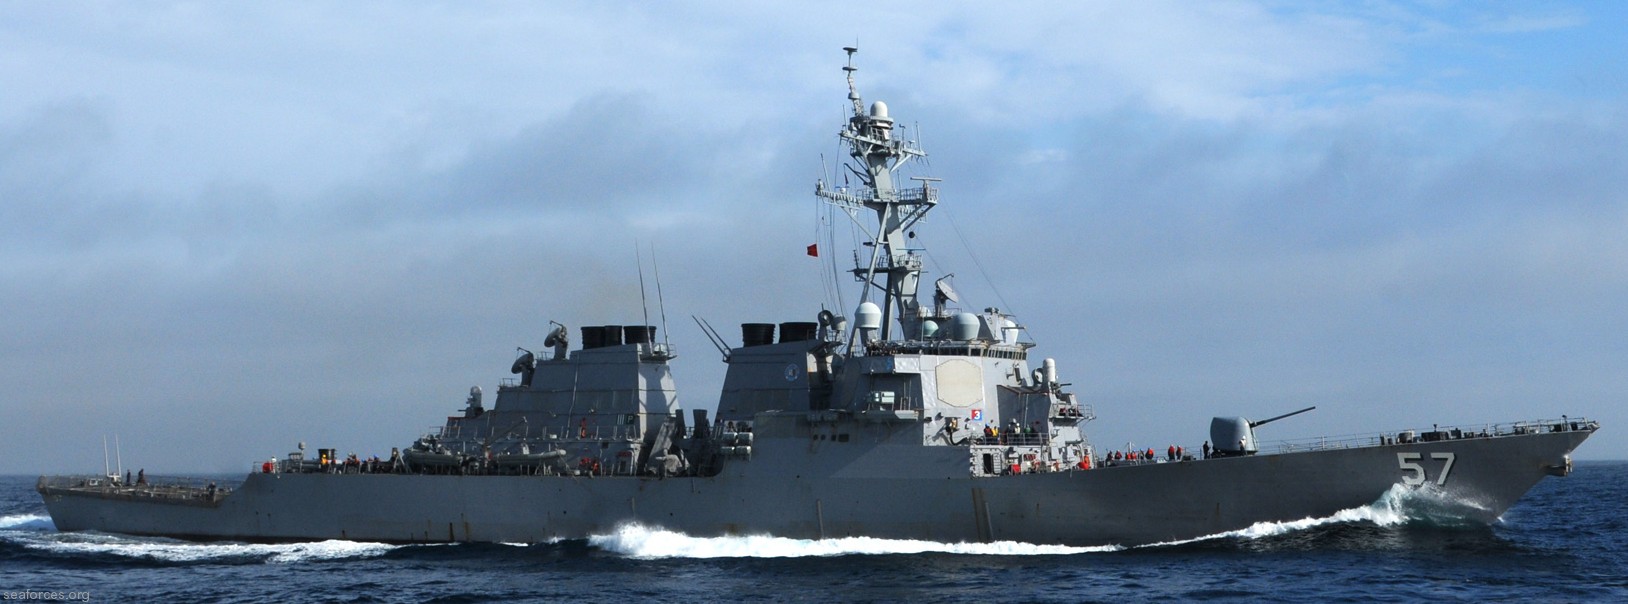 ddg-57 uss mitscher guided missile destroyer us navy 42